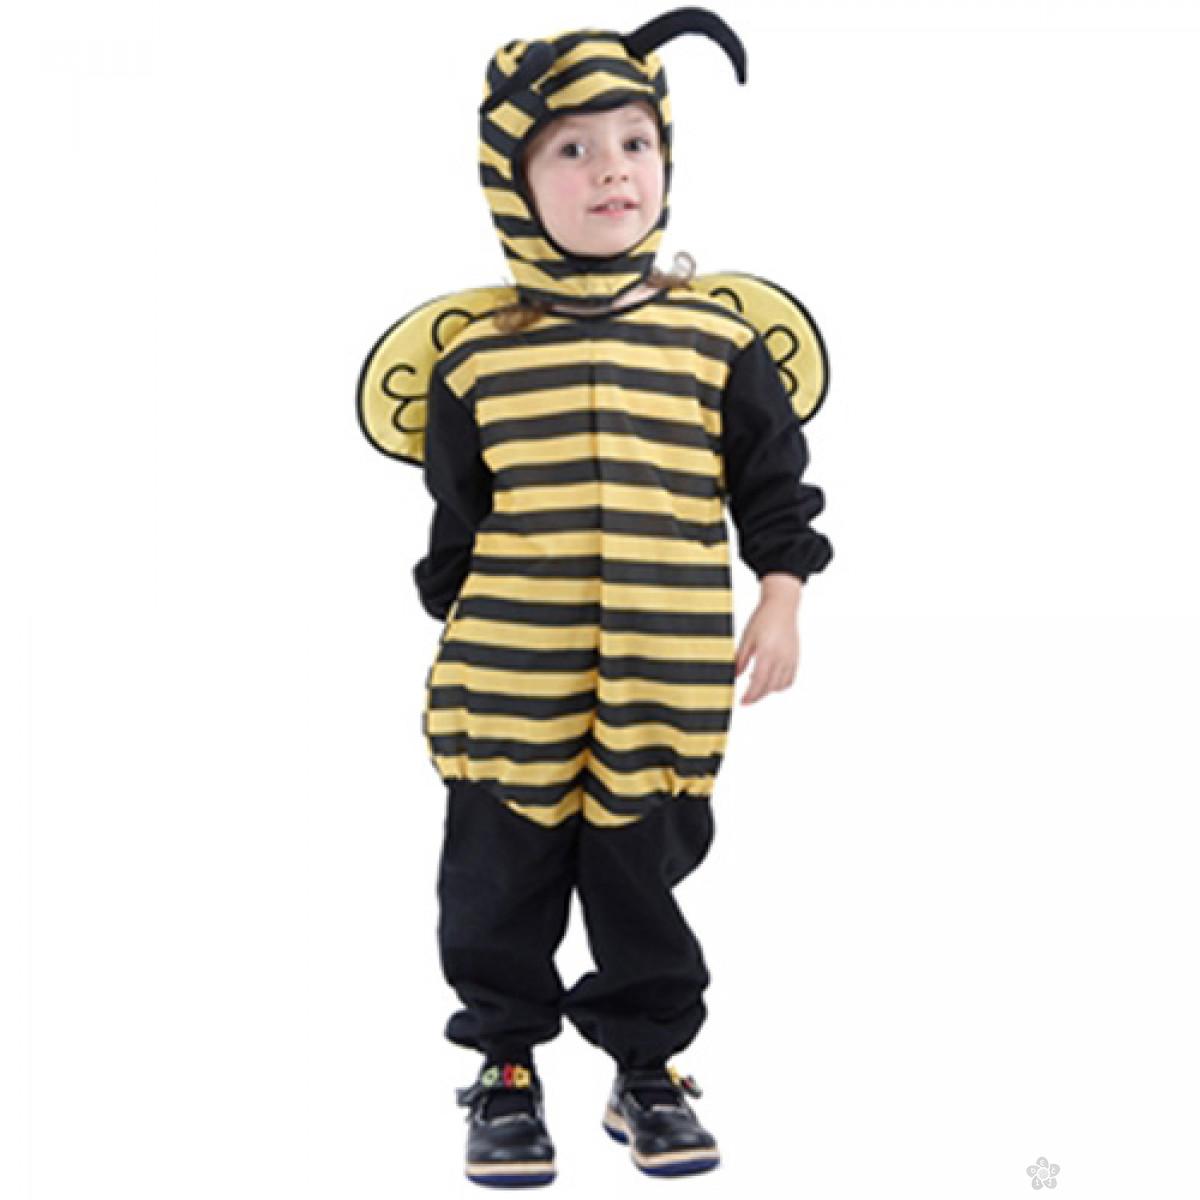 Bebi kostimi - Pčelica | Dečji sajt